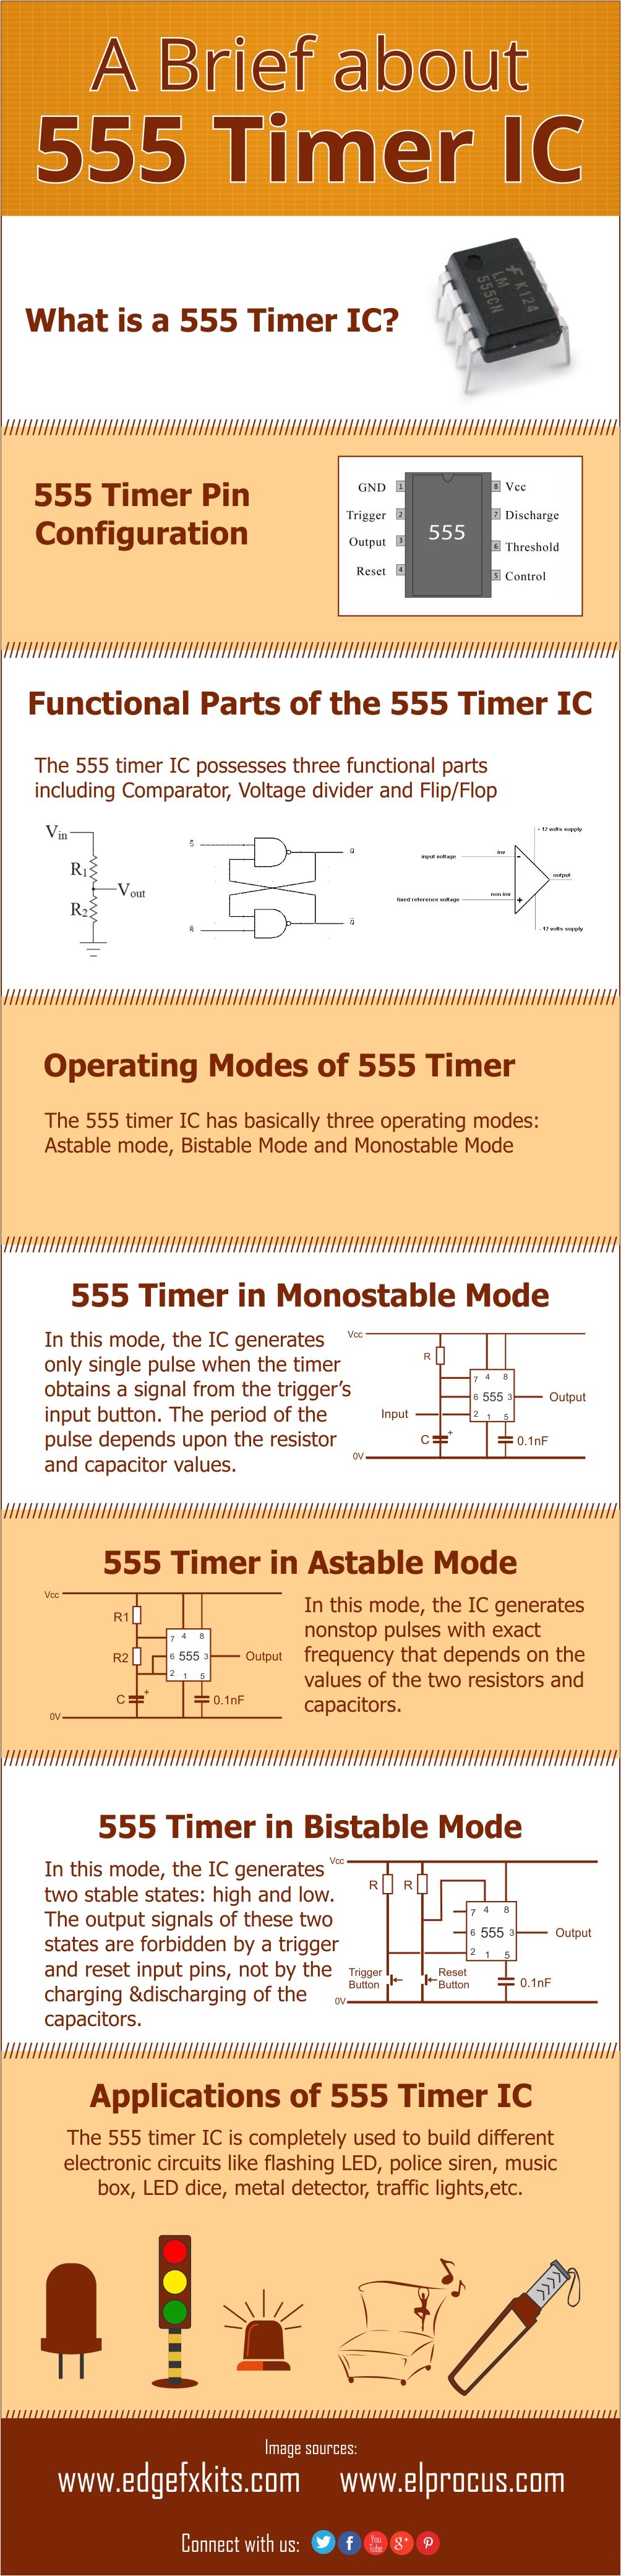 Infografia: breu sobre el temporitzador IC 555 i les seves aplicacions